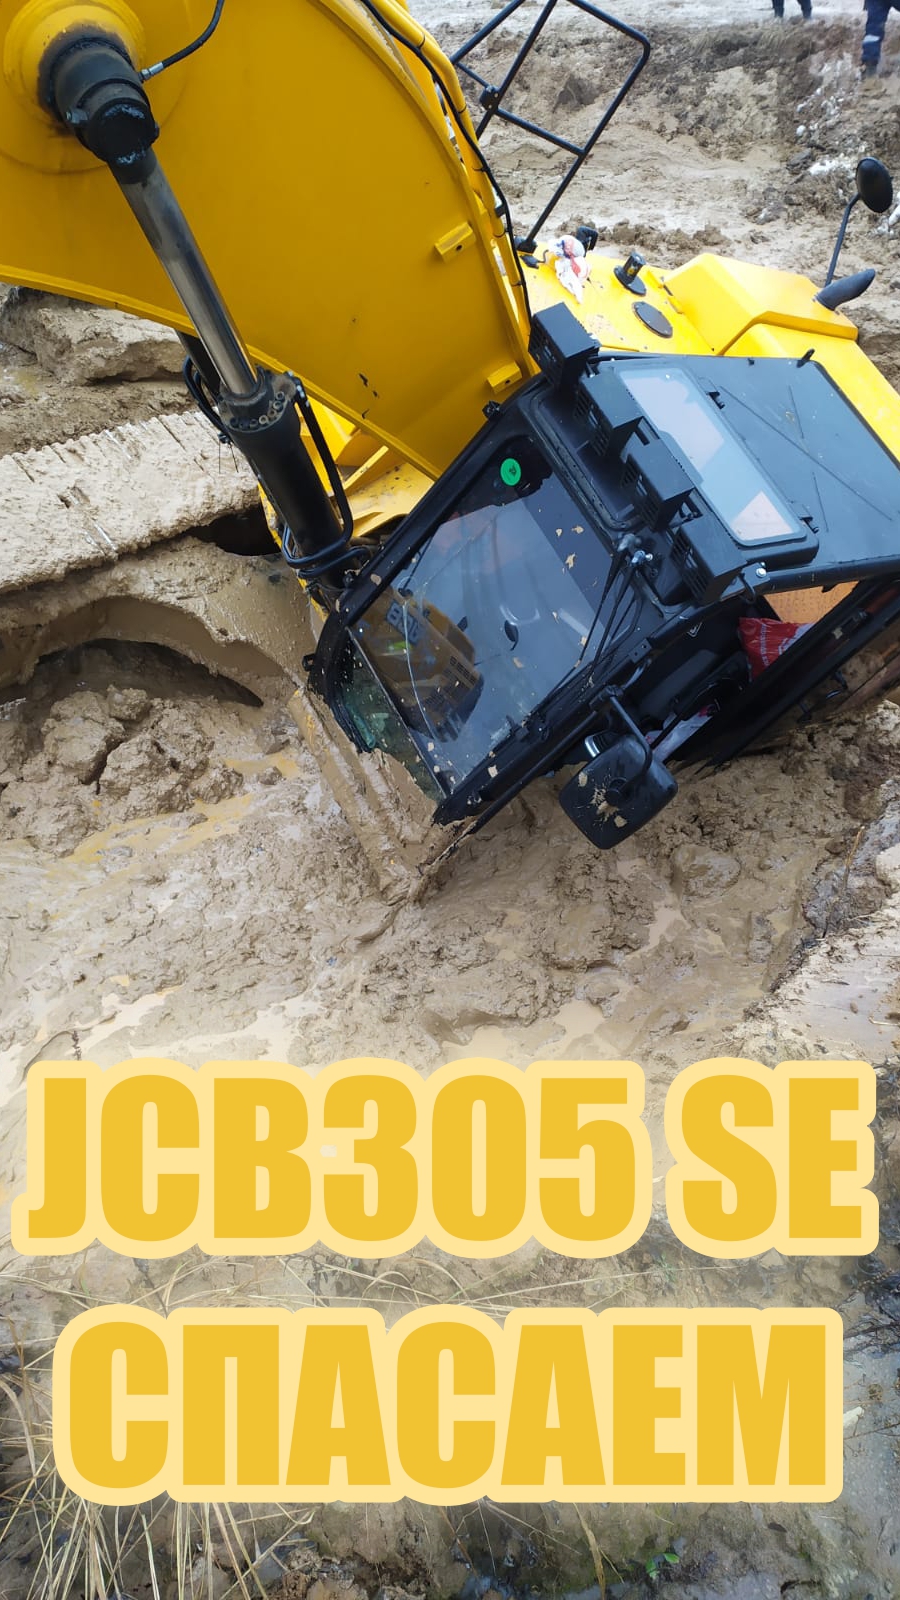 СПАСАЕМ JCB305 SPECIAL EDITION! #shorts #excavator #тяжелаятехника #automobile #бездорожье #спасение